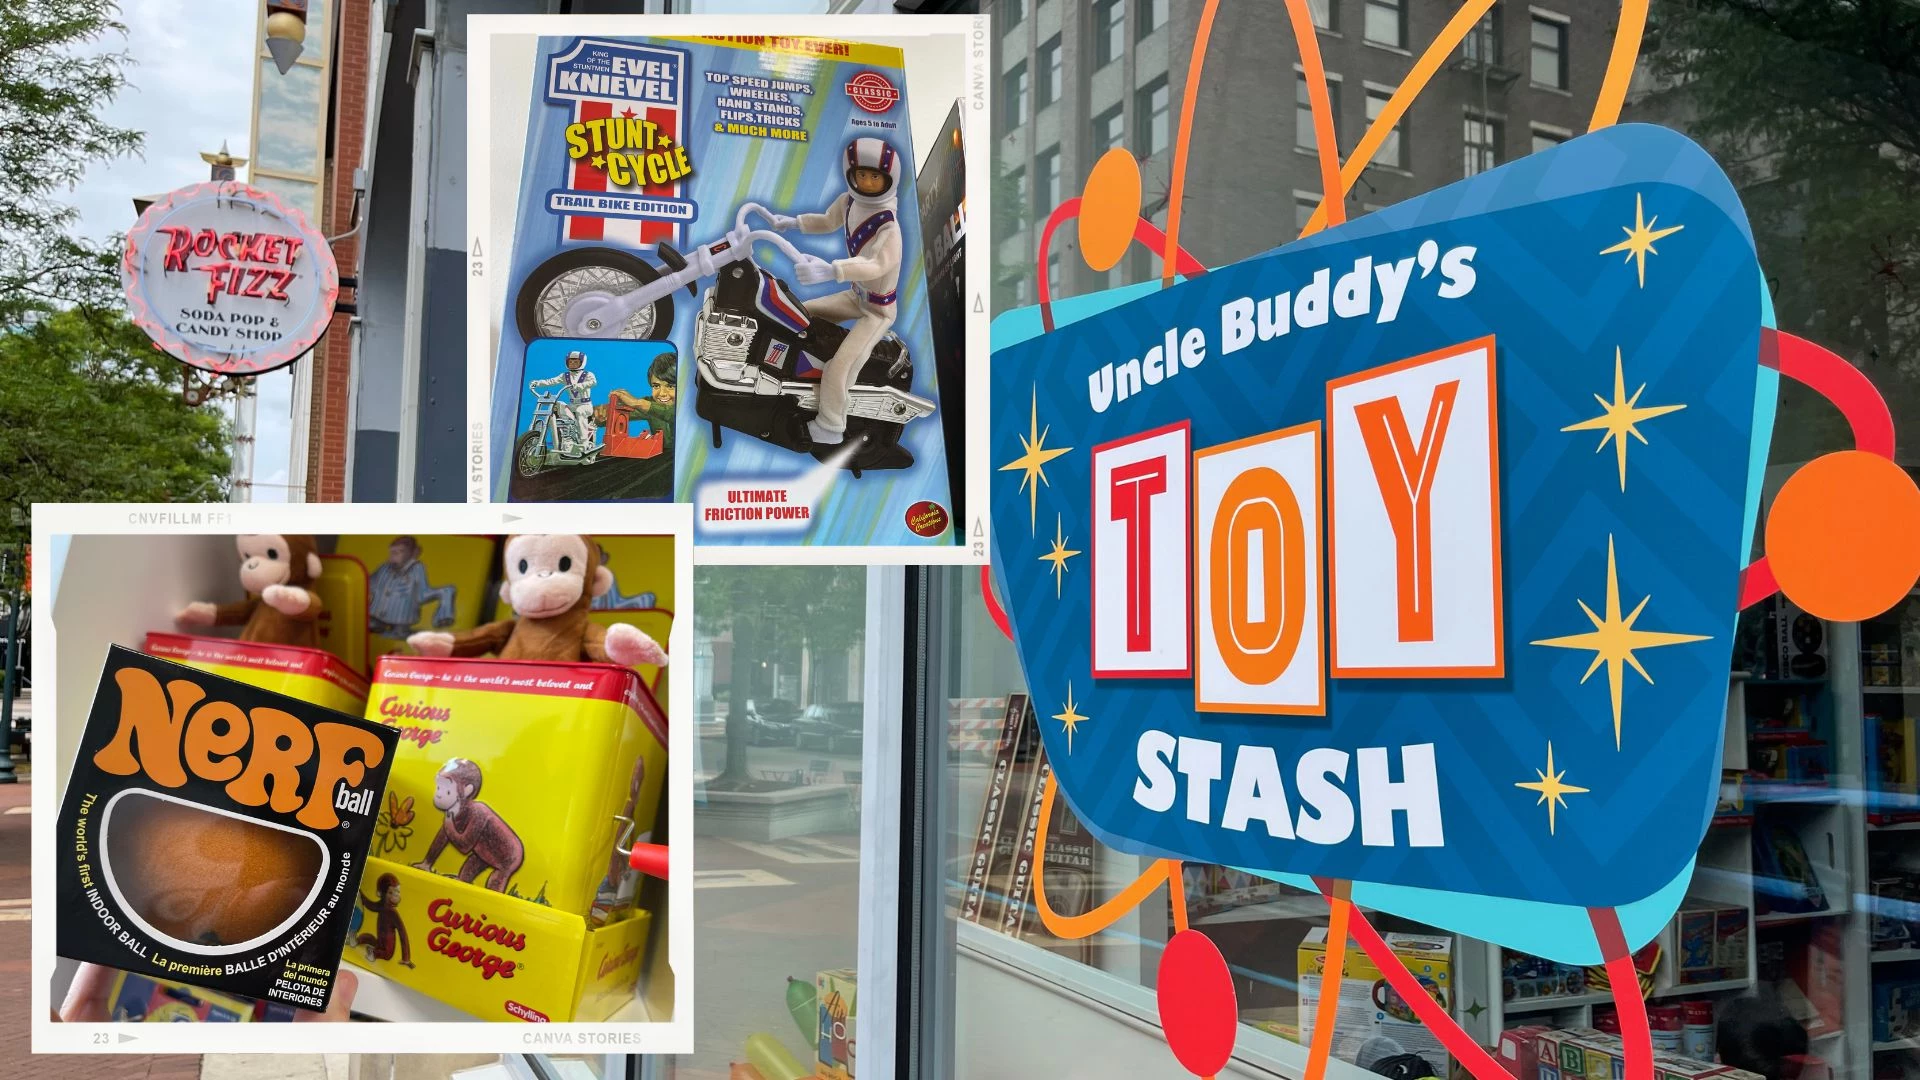 Chickadeedoos Nee Doh - Uncle Buddy's Toy Stash